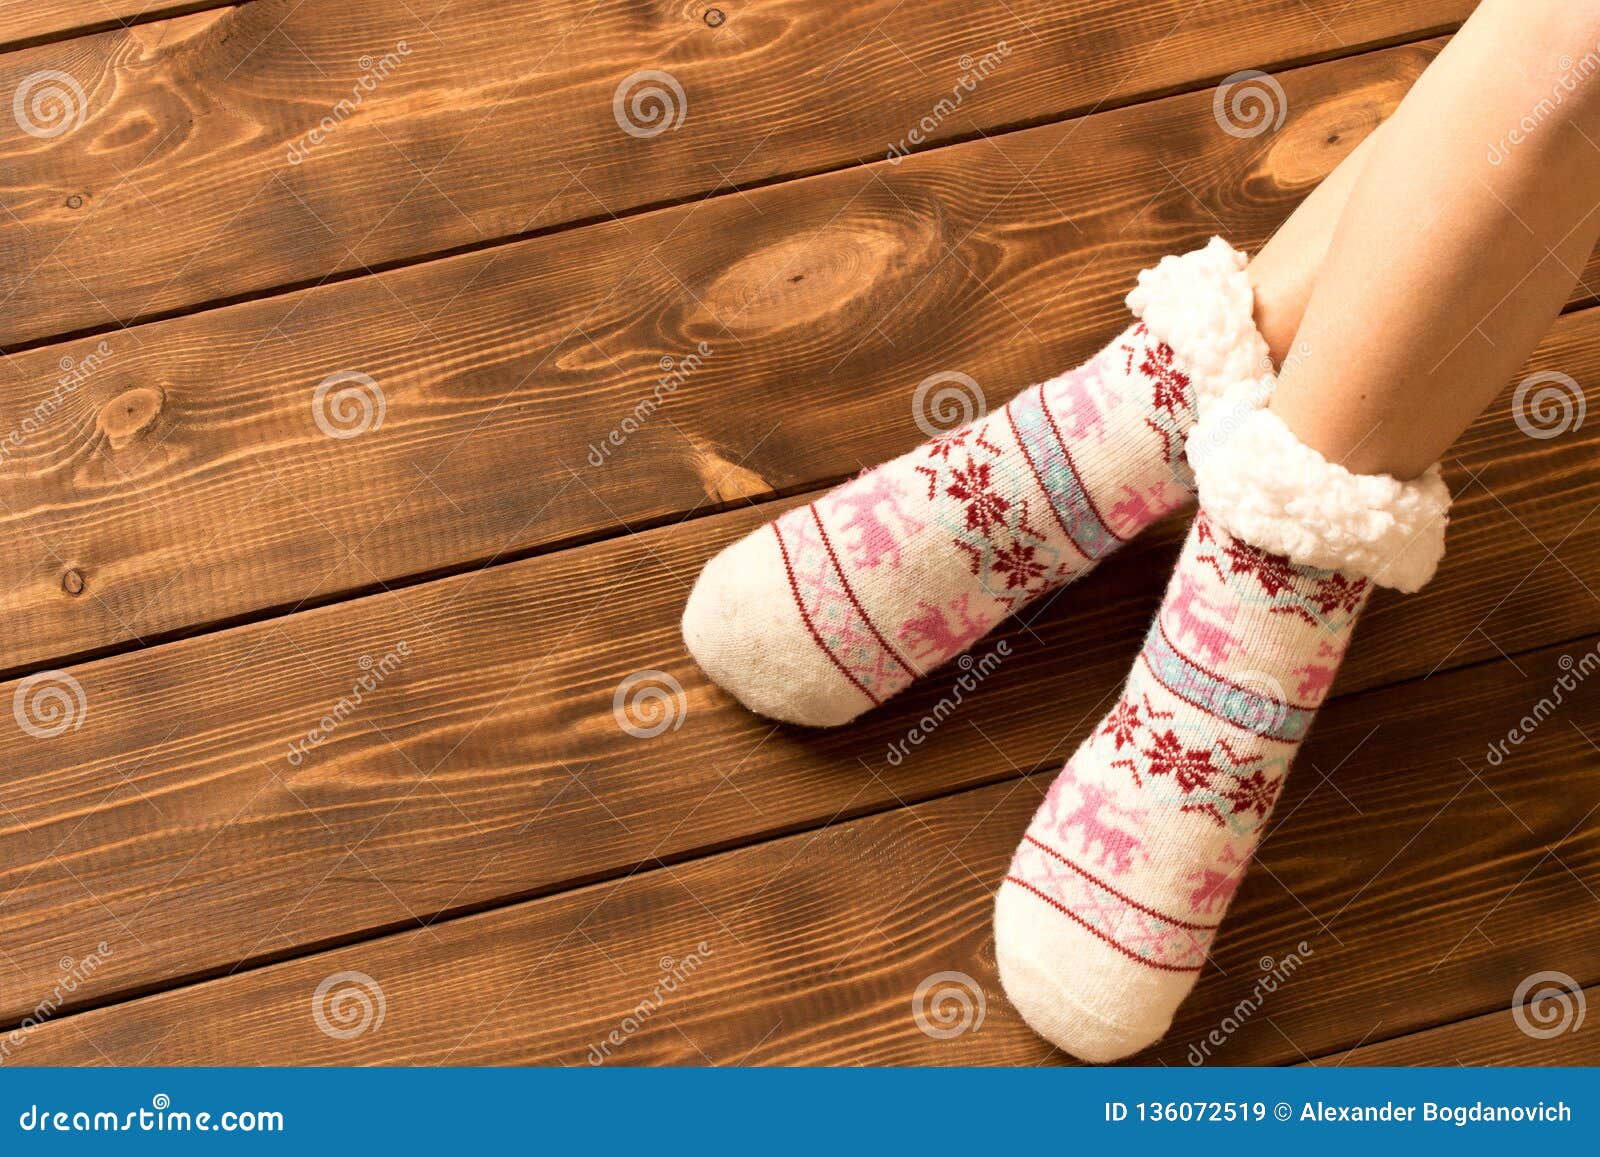 Calcetines Calientes Divertidos En Los Pies De La Niña de archivo - Imagen de ropa, pierna: 136072519